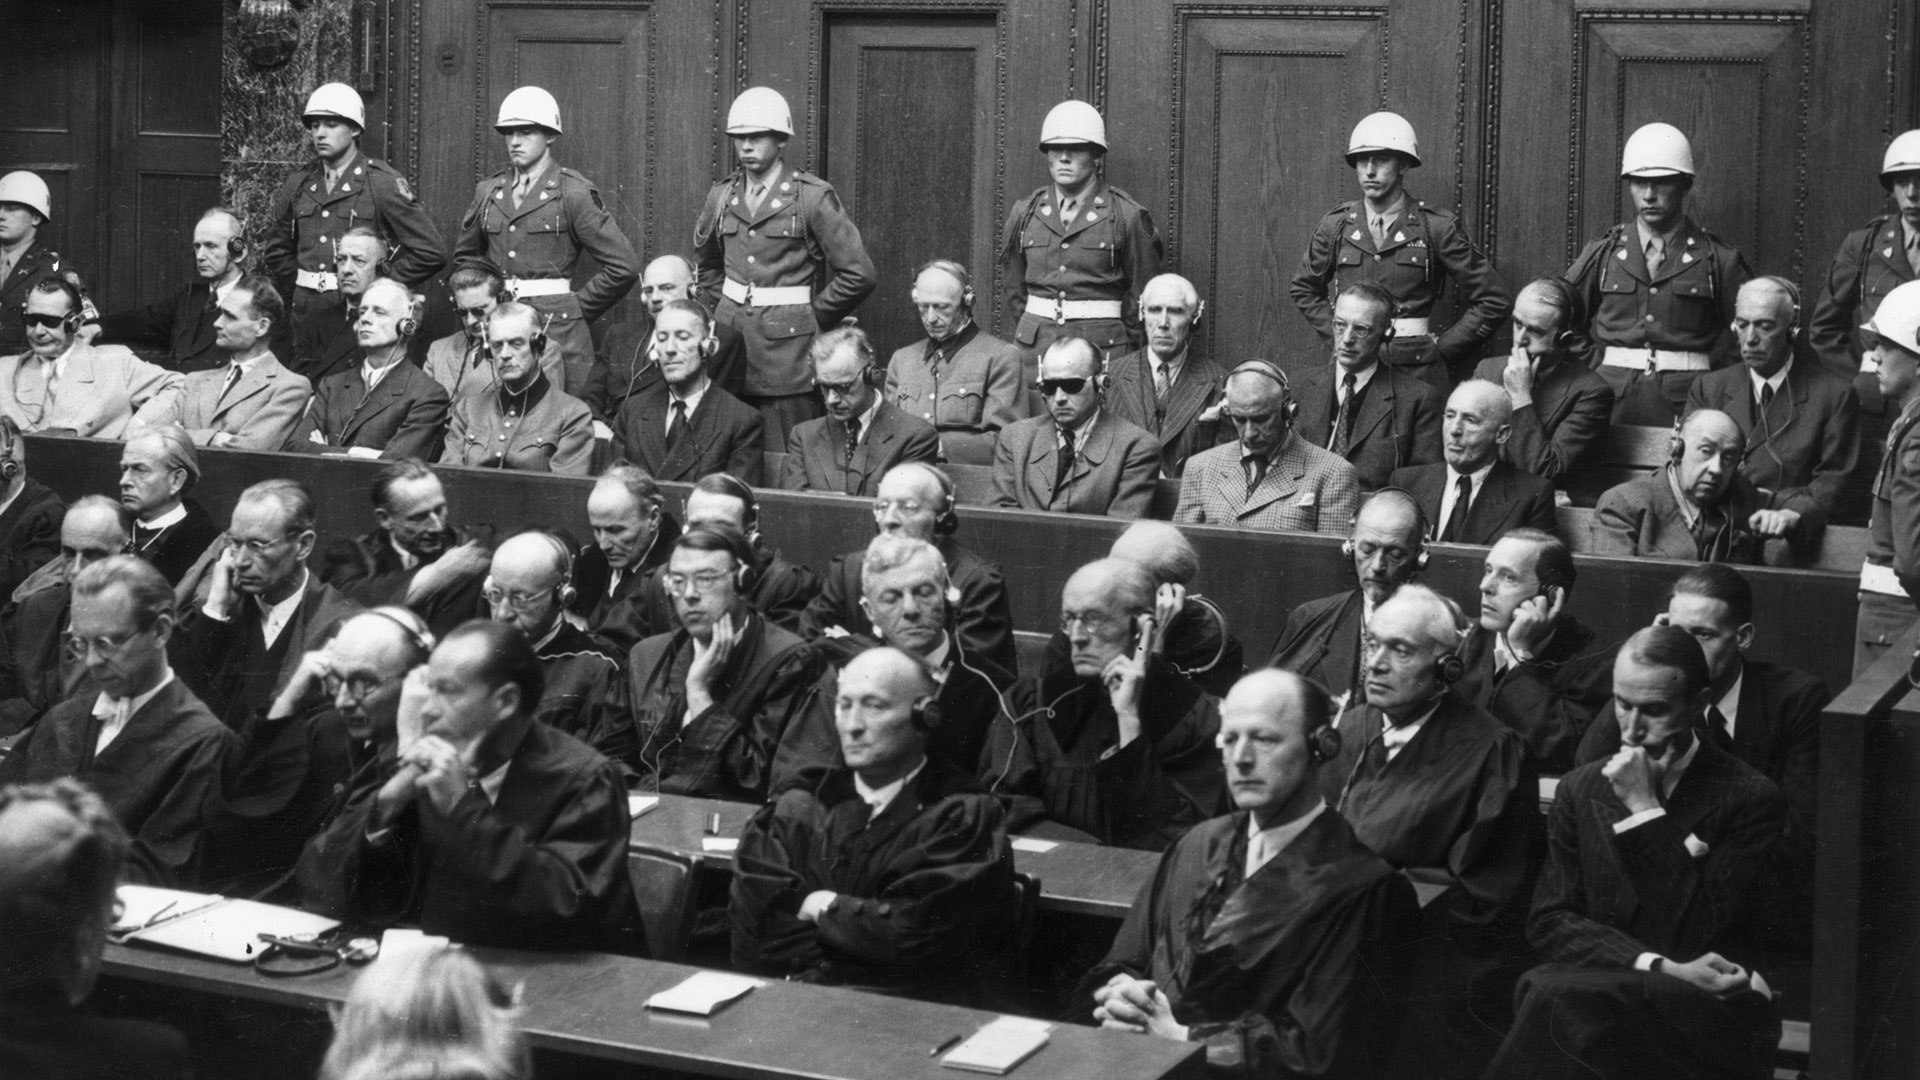 Documental_ Nuremberg, juicio de Hermann Goering  I2CYATW2SRCI7DVW4LHNES7YWY